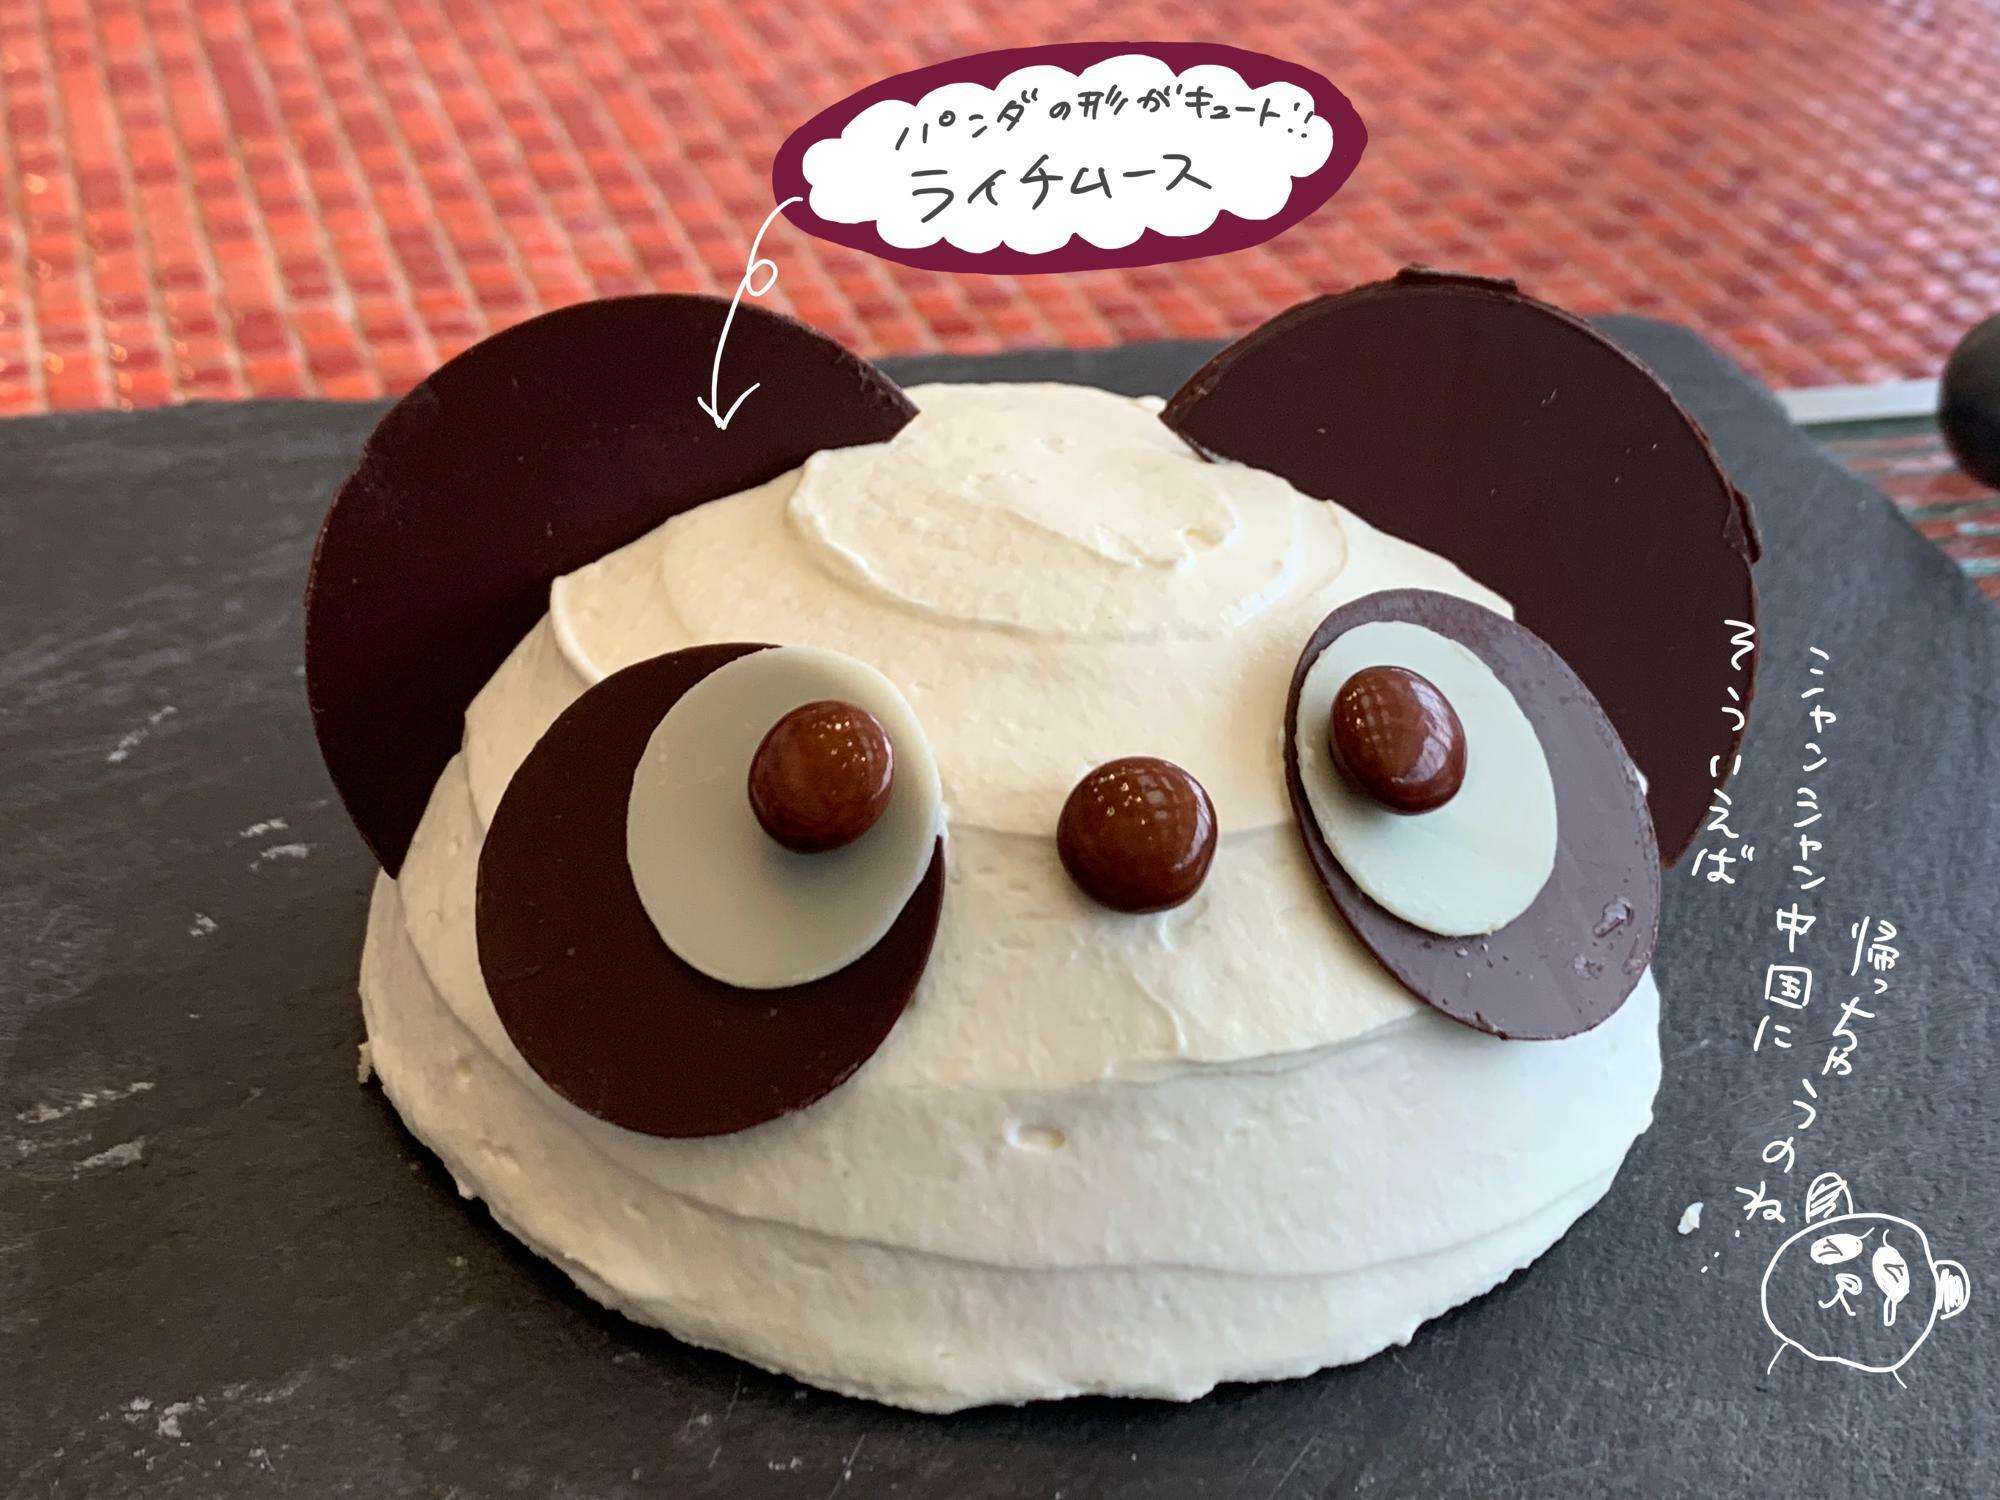 キョトン顔のパンダ型ケーキはライチ味！